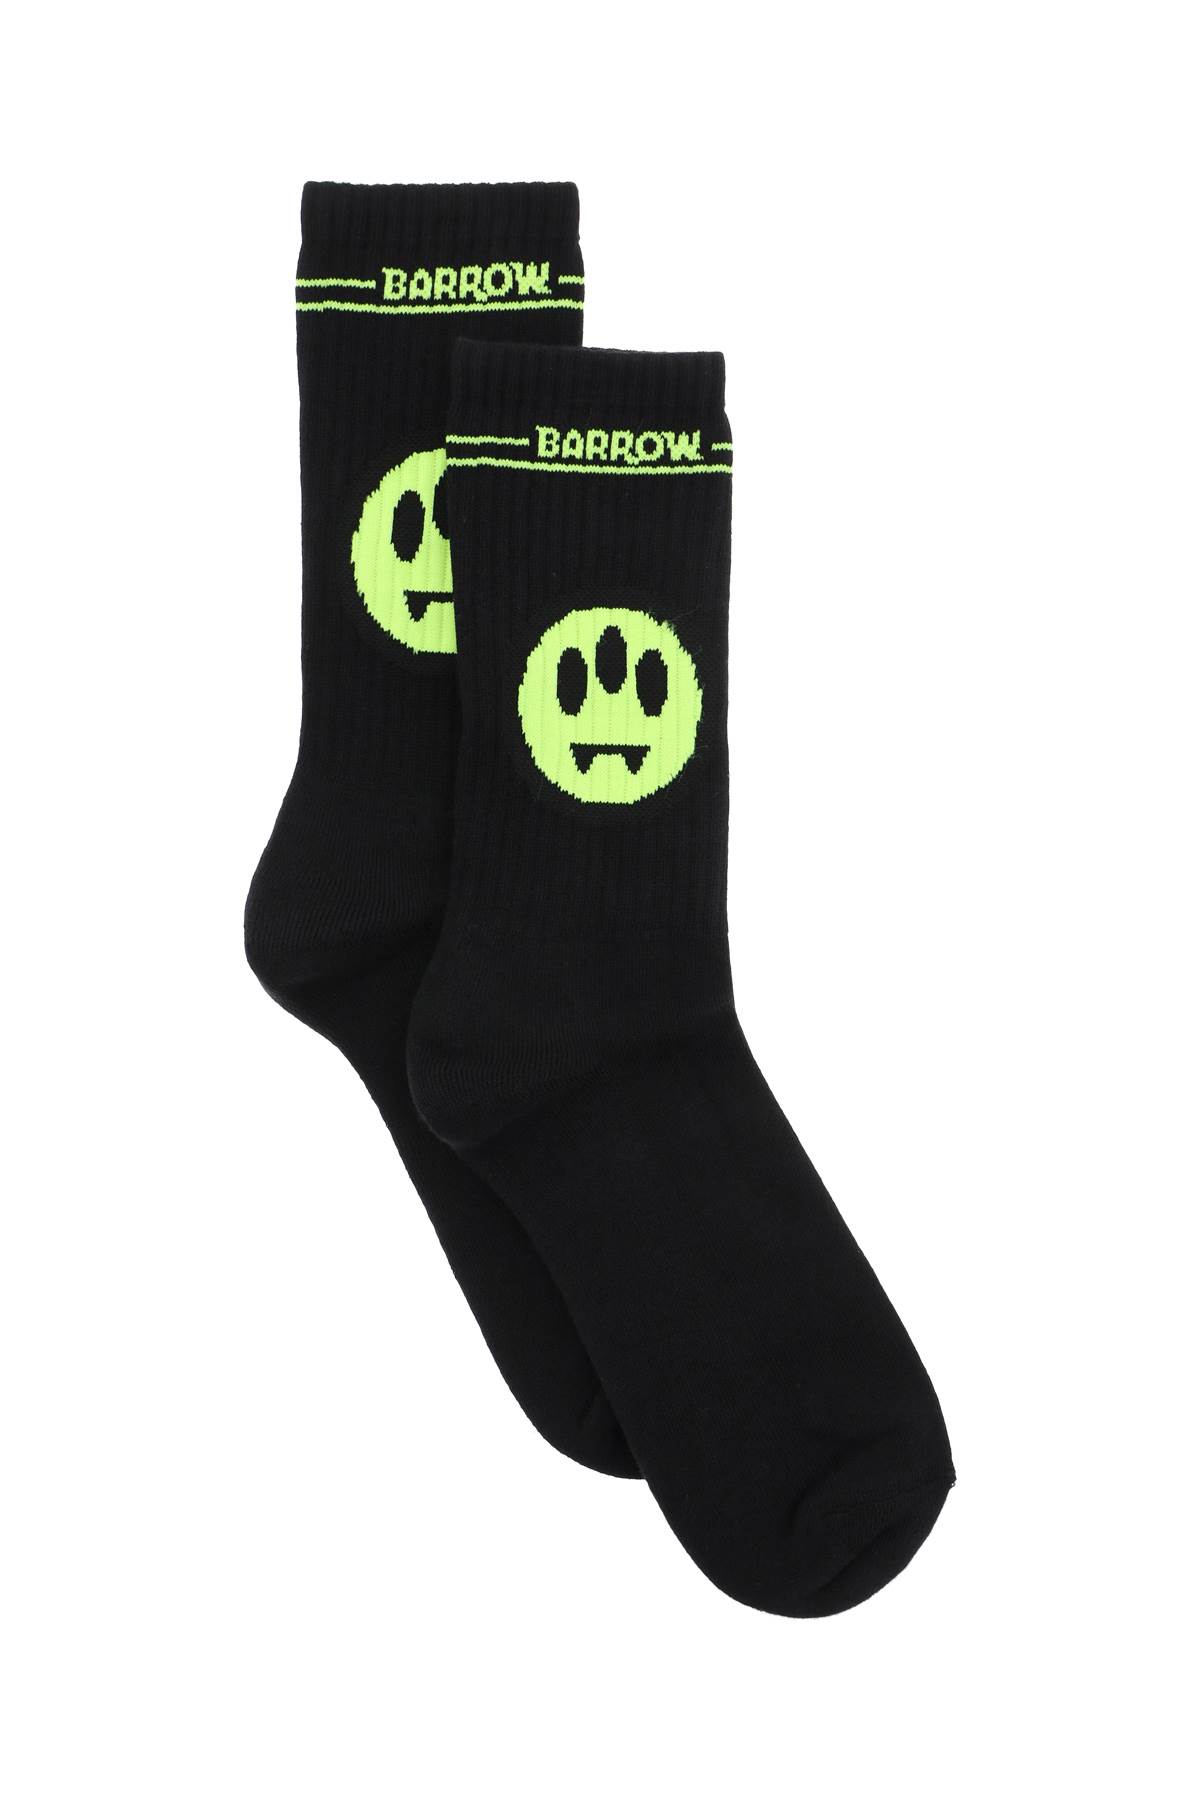 Barrow Smiley Logo Sports Socks